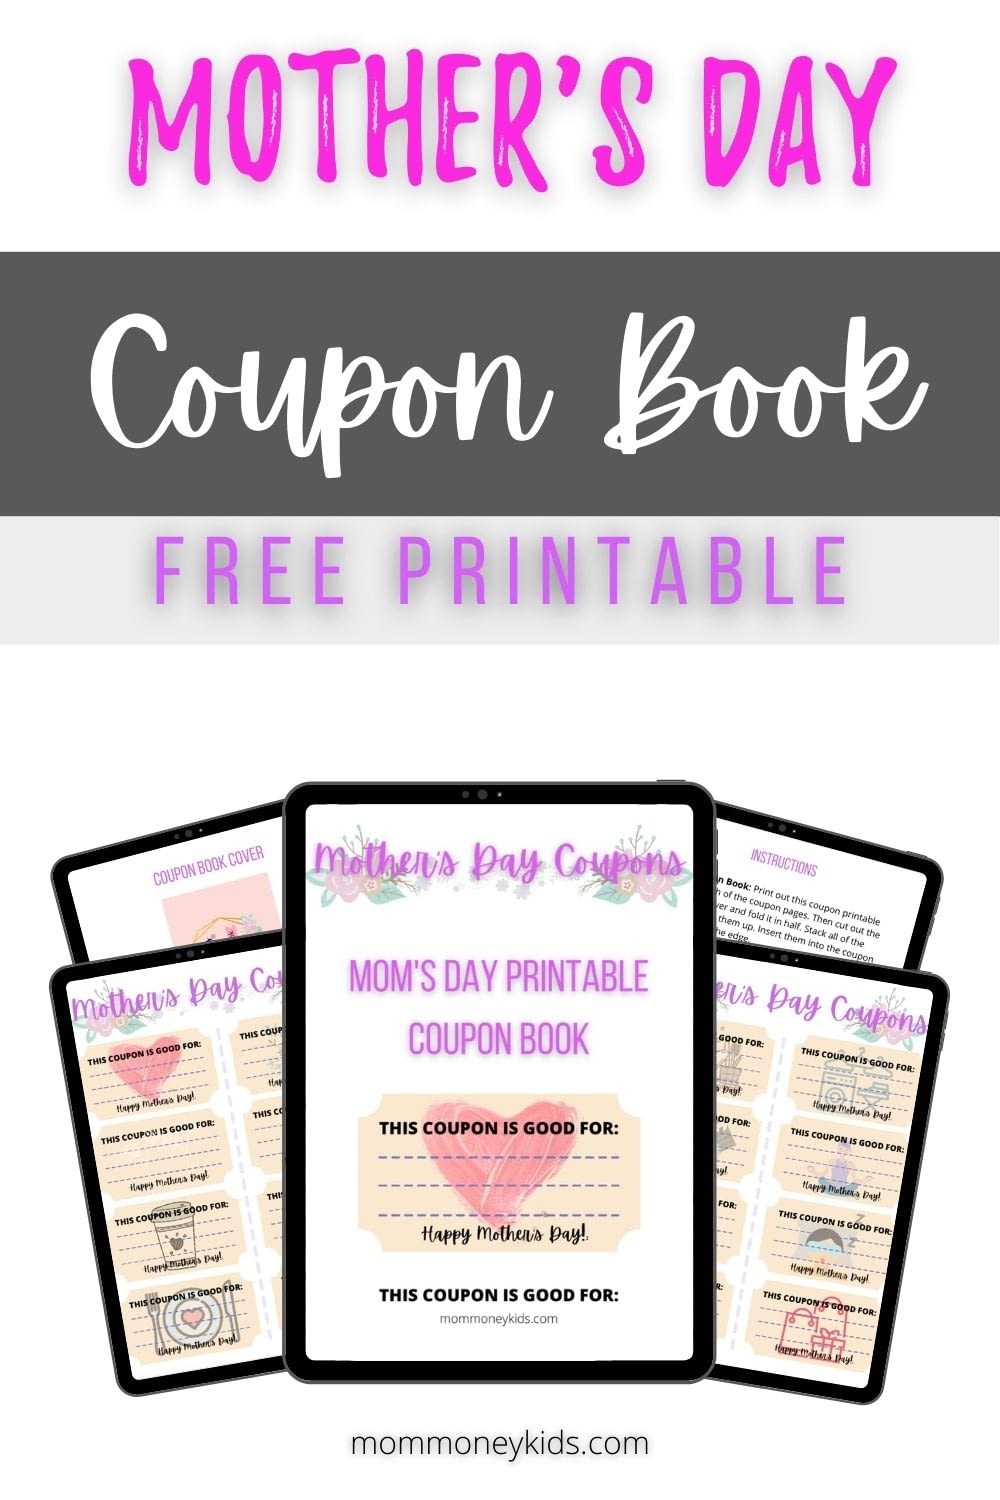 Motherhood Printable Coupons - Free Printable Mother S Day Coupons To Make Mom S Day /